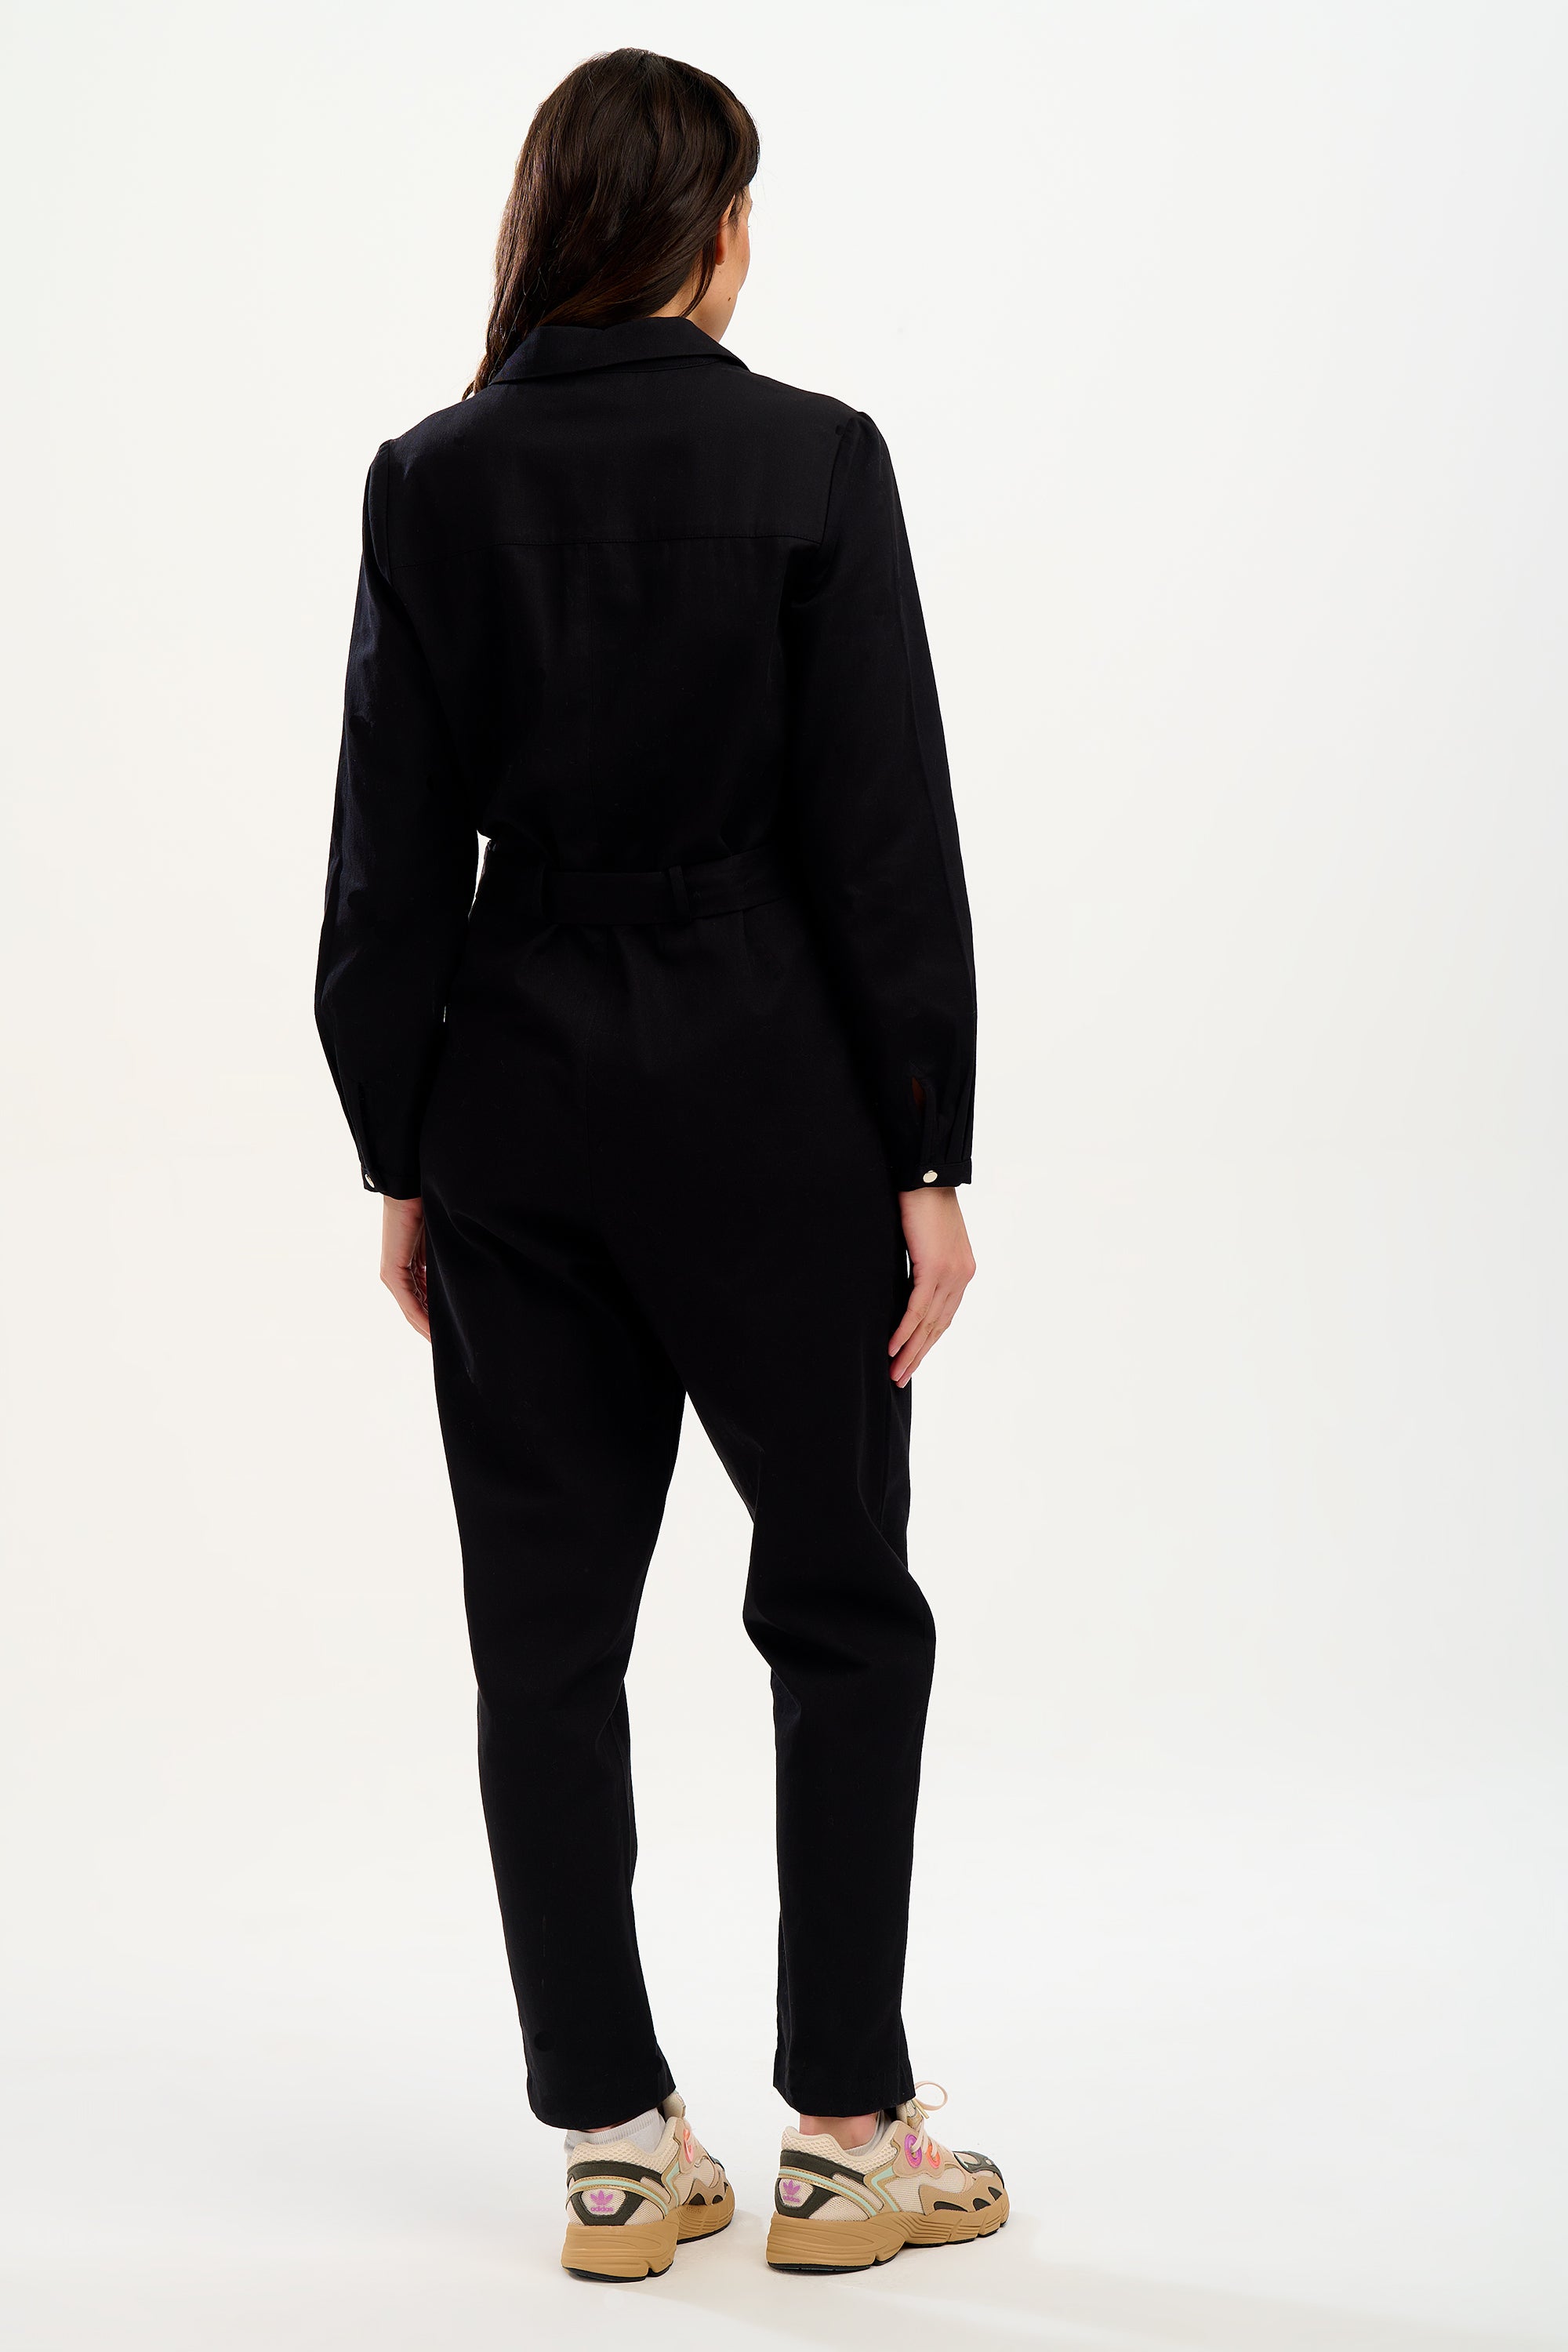 Anwen Black Boiler Suit | Sugarhill Boutique